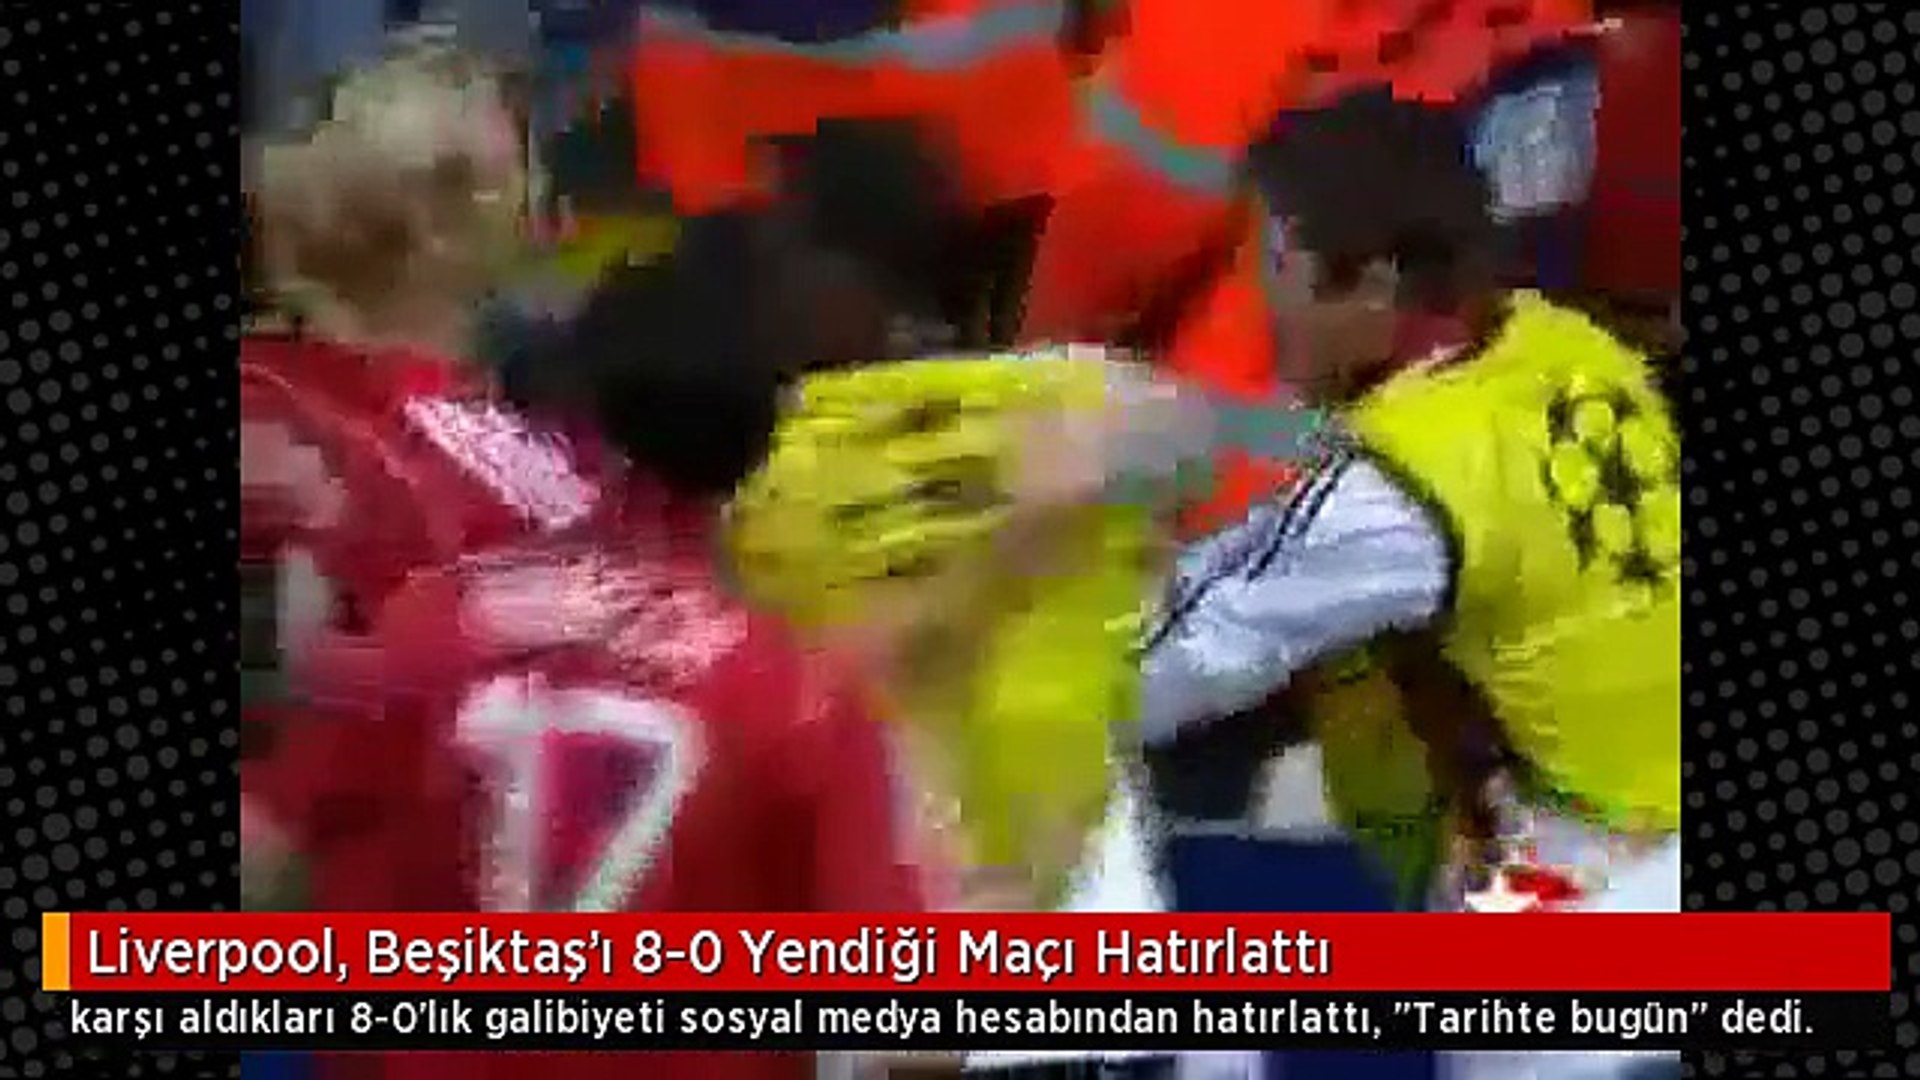 Liverpool, Beşiktaş'ı 8-0 Yendiği Maçı Hatırlattı - Dailymotion Video